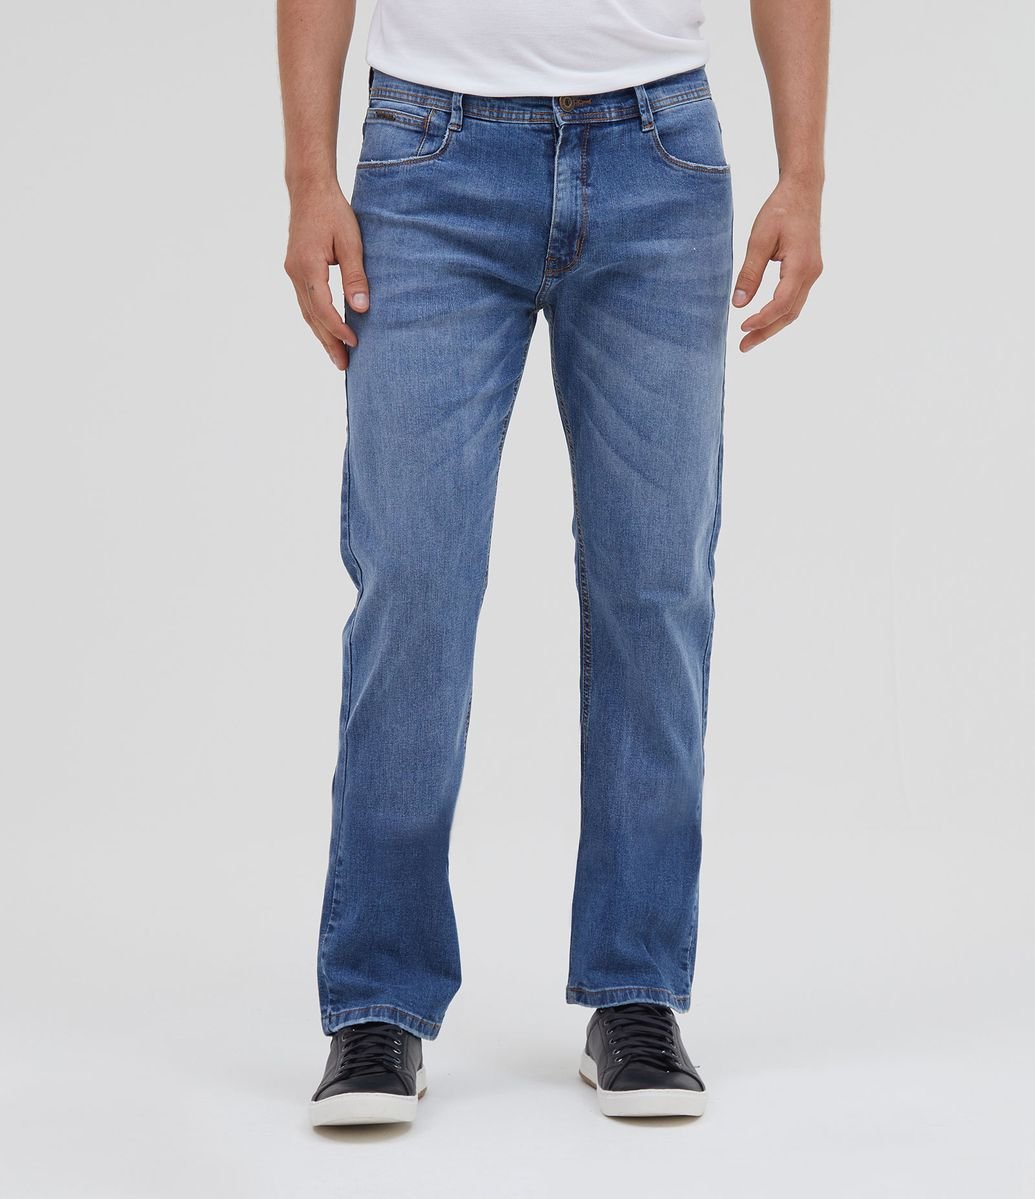 comprar calça jeans masculina